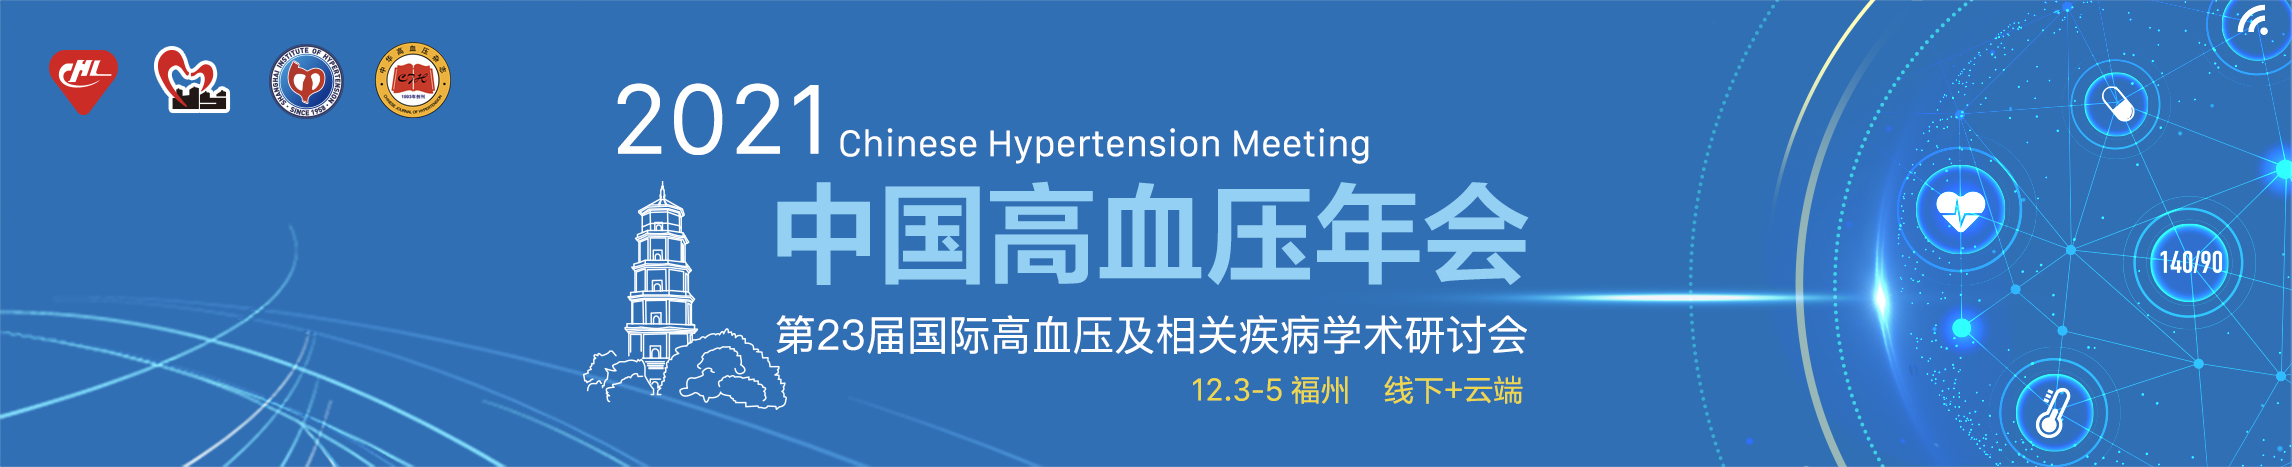 2021年中国高血压年会暨第23届国际高血压及相关疾病学术研讨会